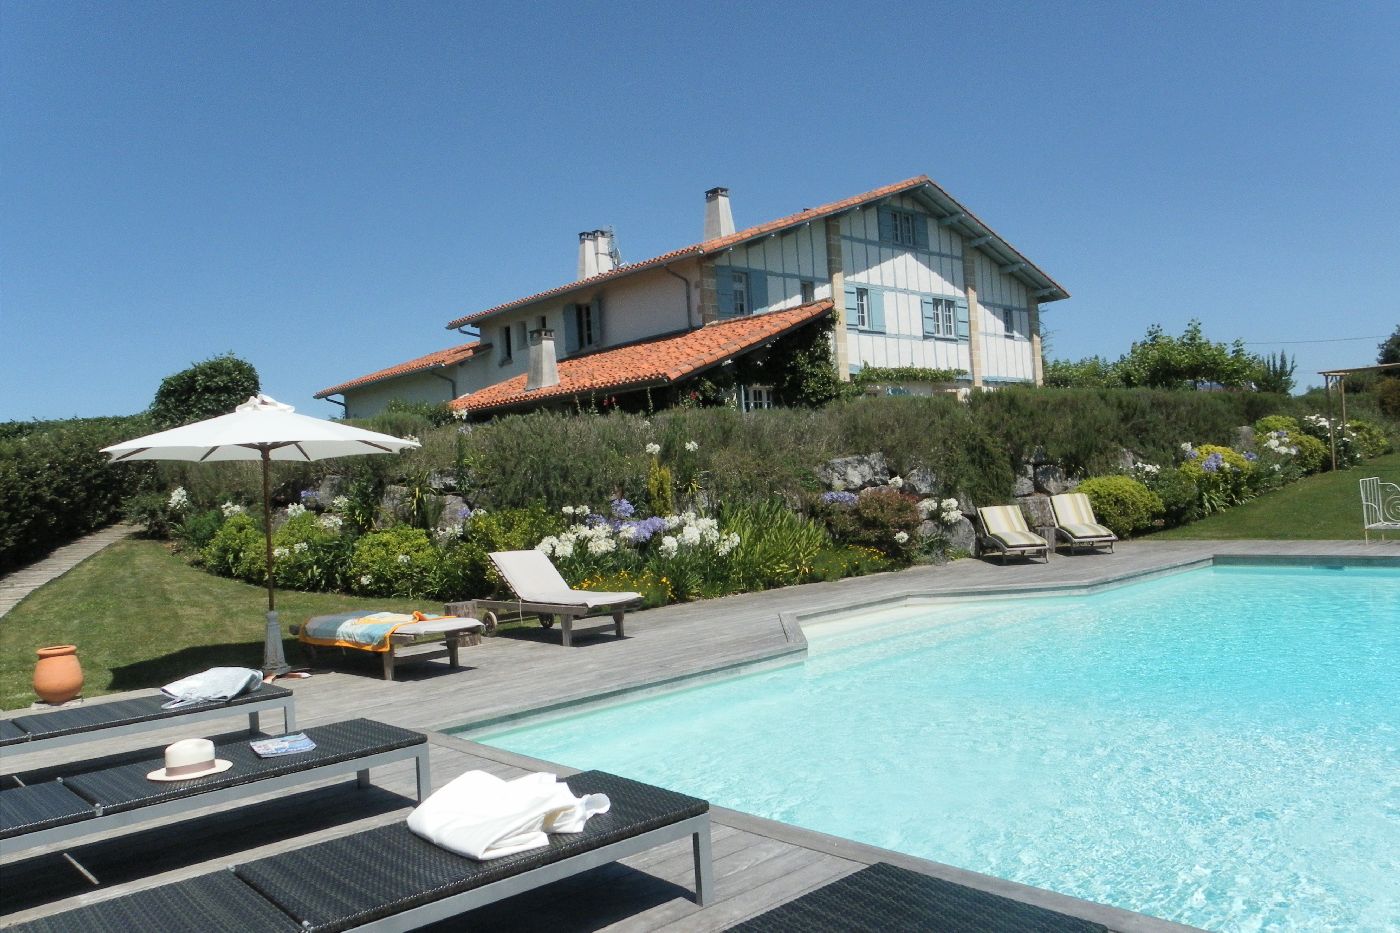 golf-expedition-golf-reizen-frankrijk-regio-biarritz-les-voles-blue-prachtige-accommodatie-met-zwembad-ligbedden-en-tuin-.jpg